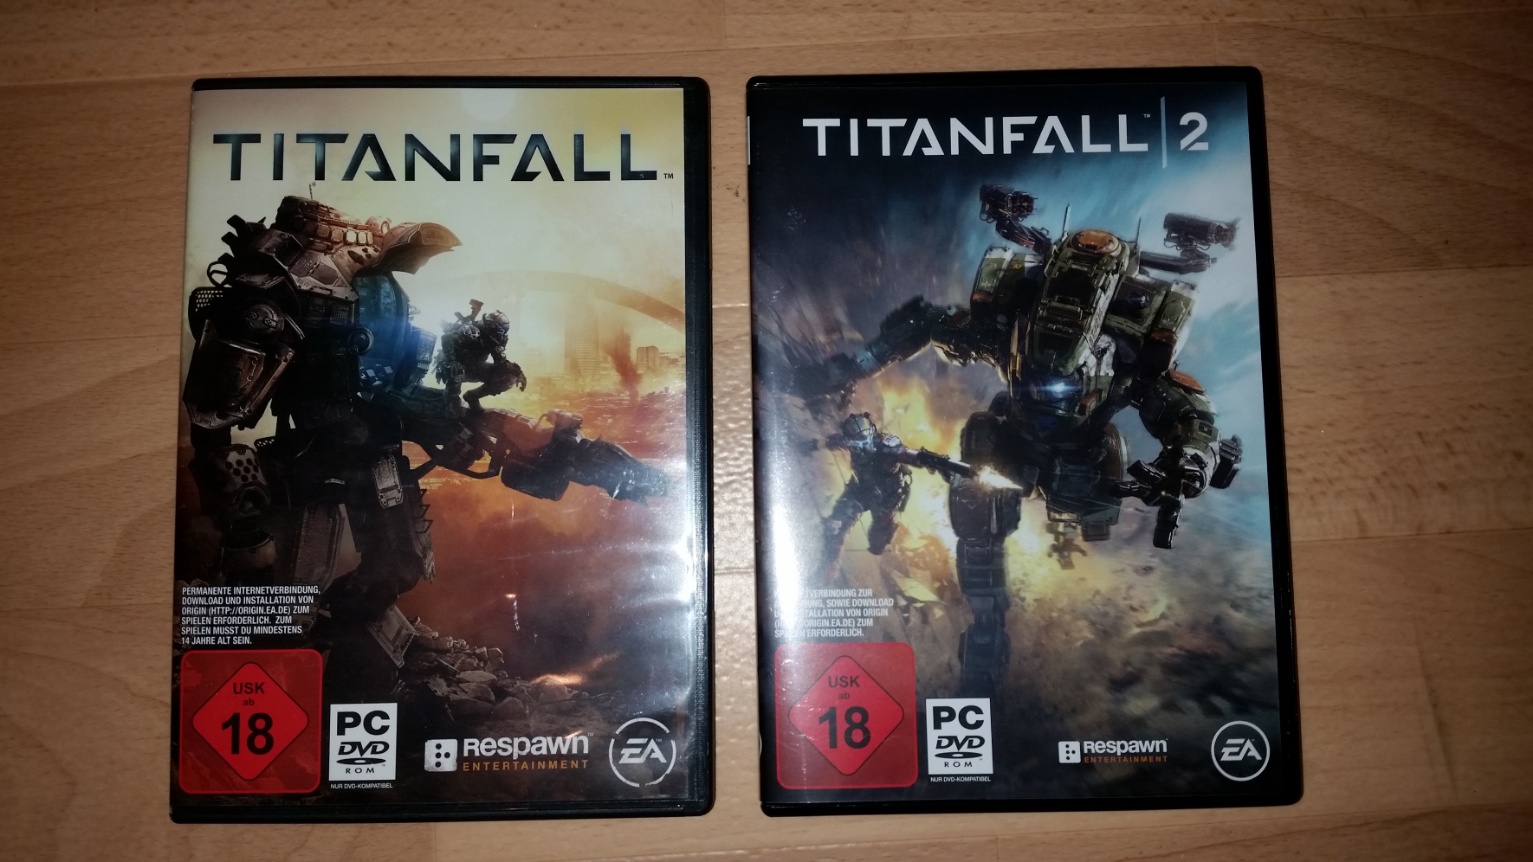 Titanfall 2 Origin Charts